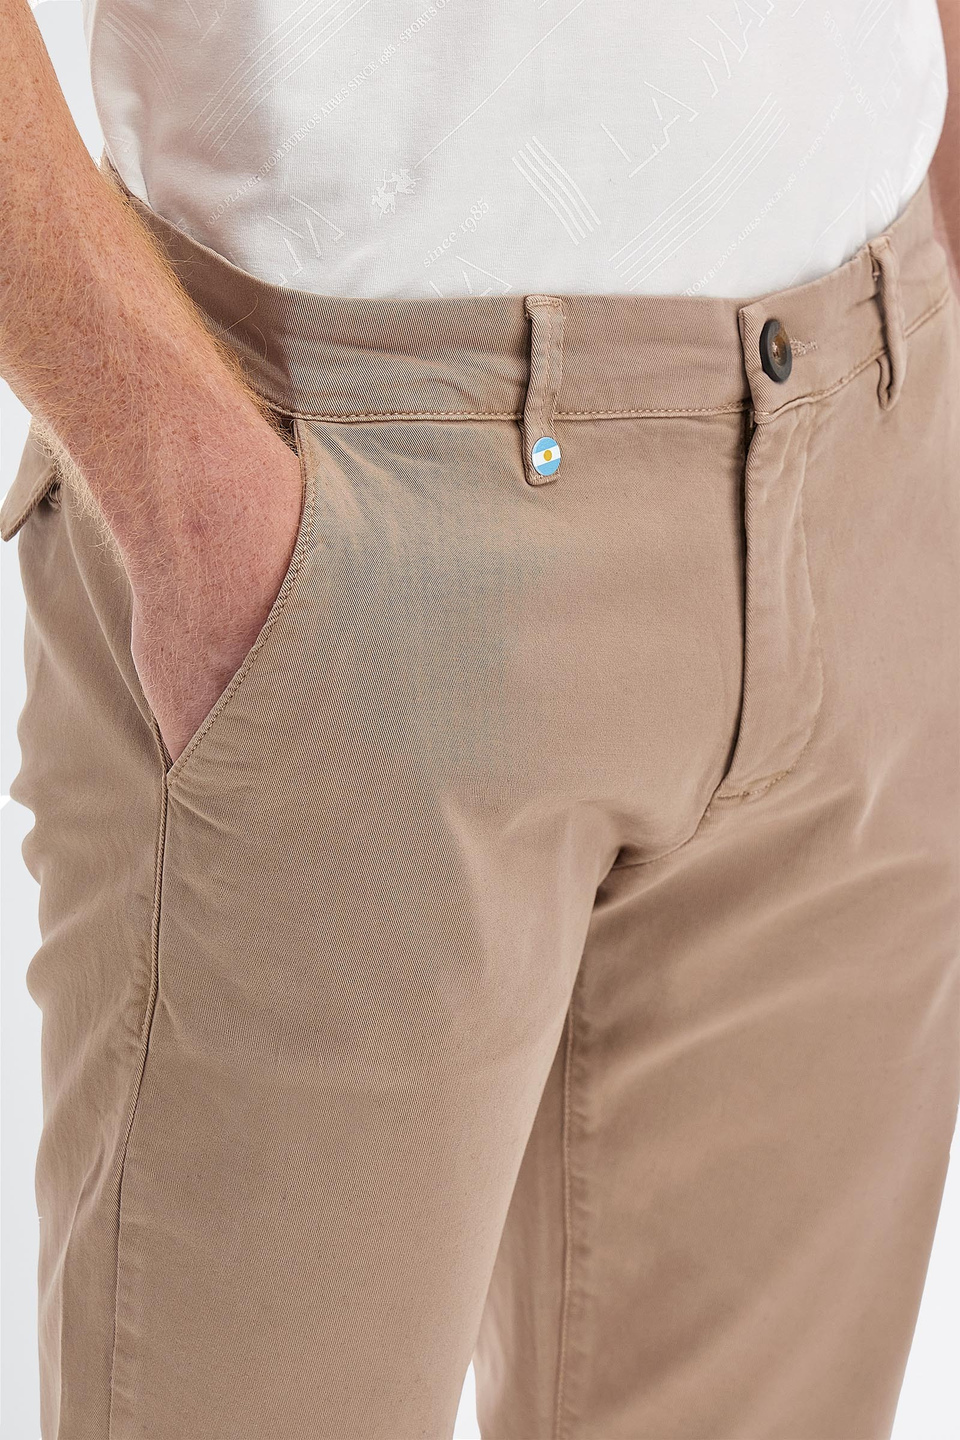 Pantalone da uomo in cotone twill stretch modello chino slim fit | La Martina - Official Online Shop